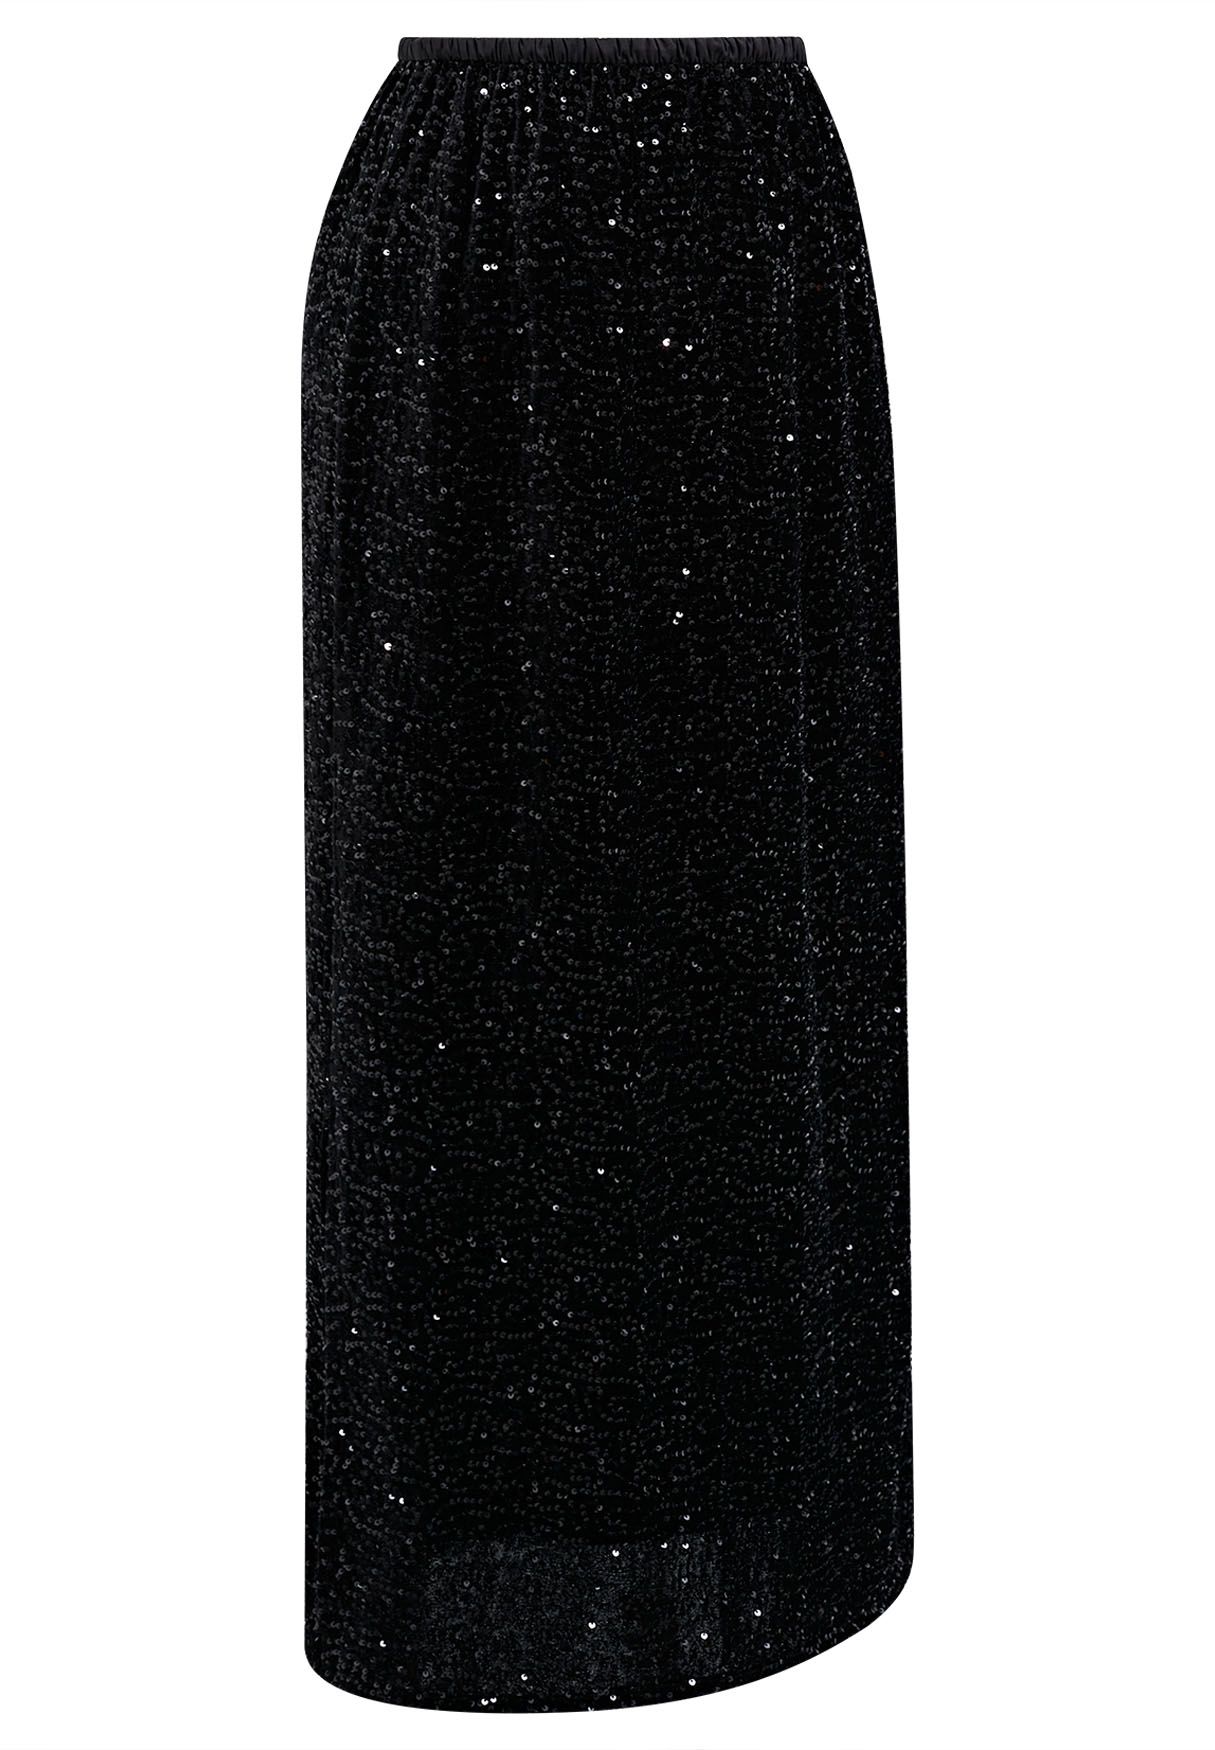 Falda lápiz de terciopelo adornada con lentejuelas en negro